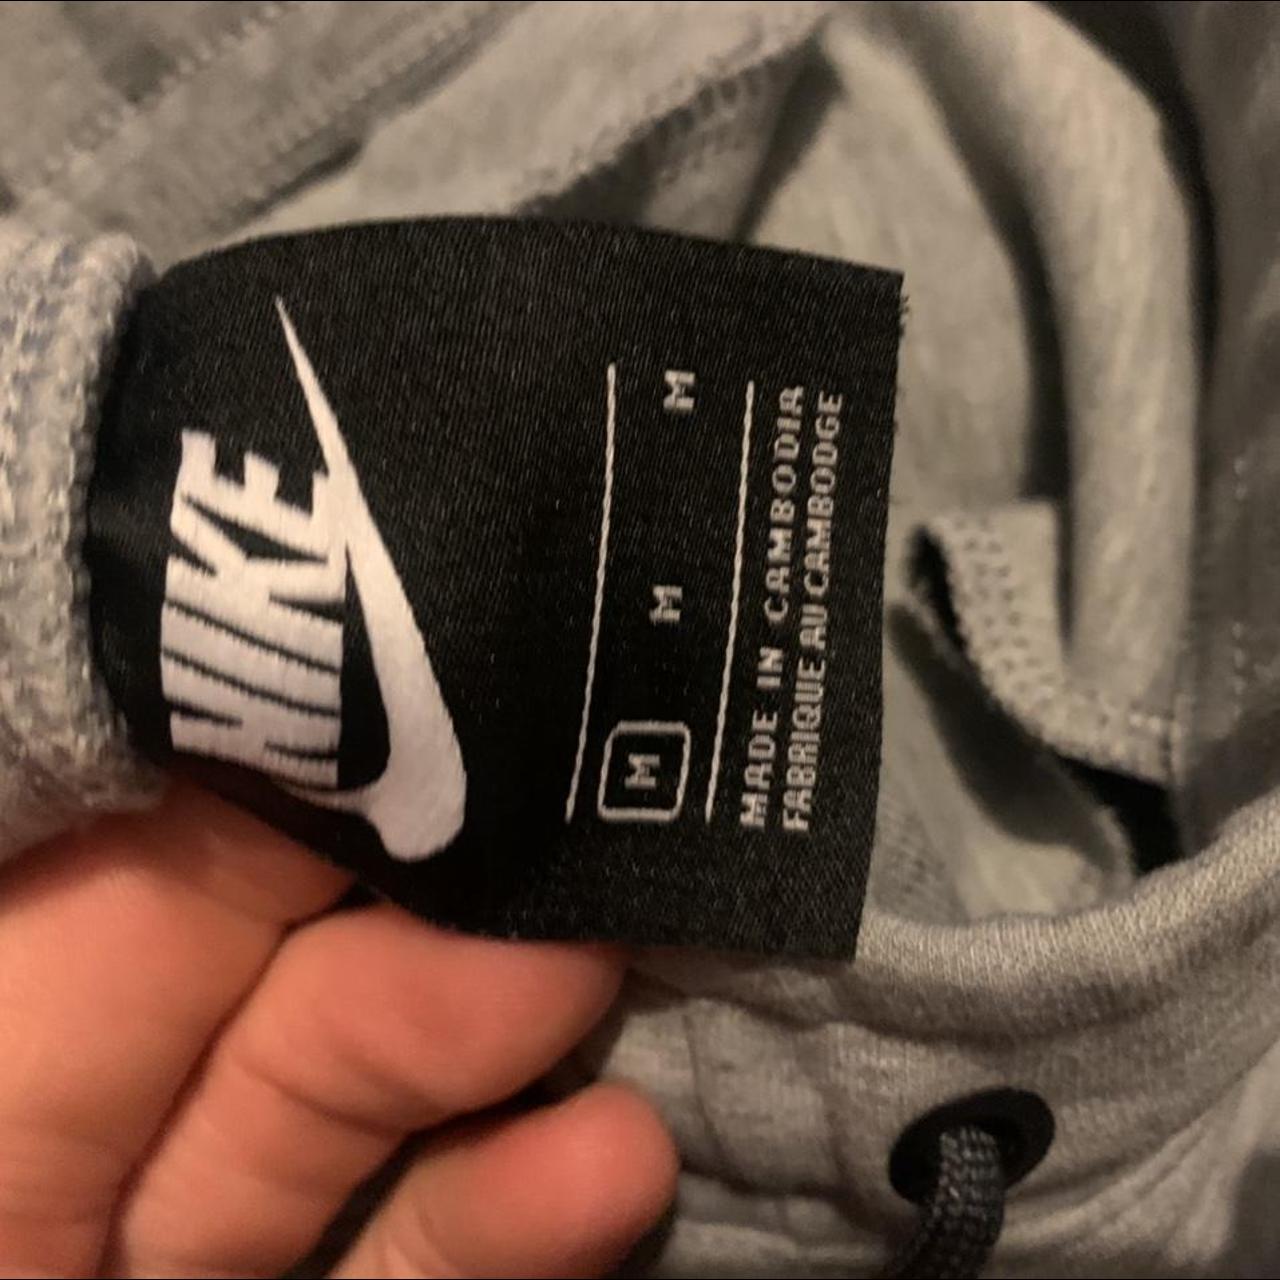 Men’s Nike tech fleece old season grey great... - Depop